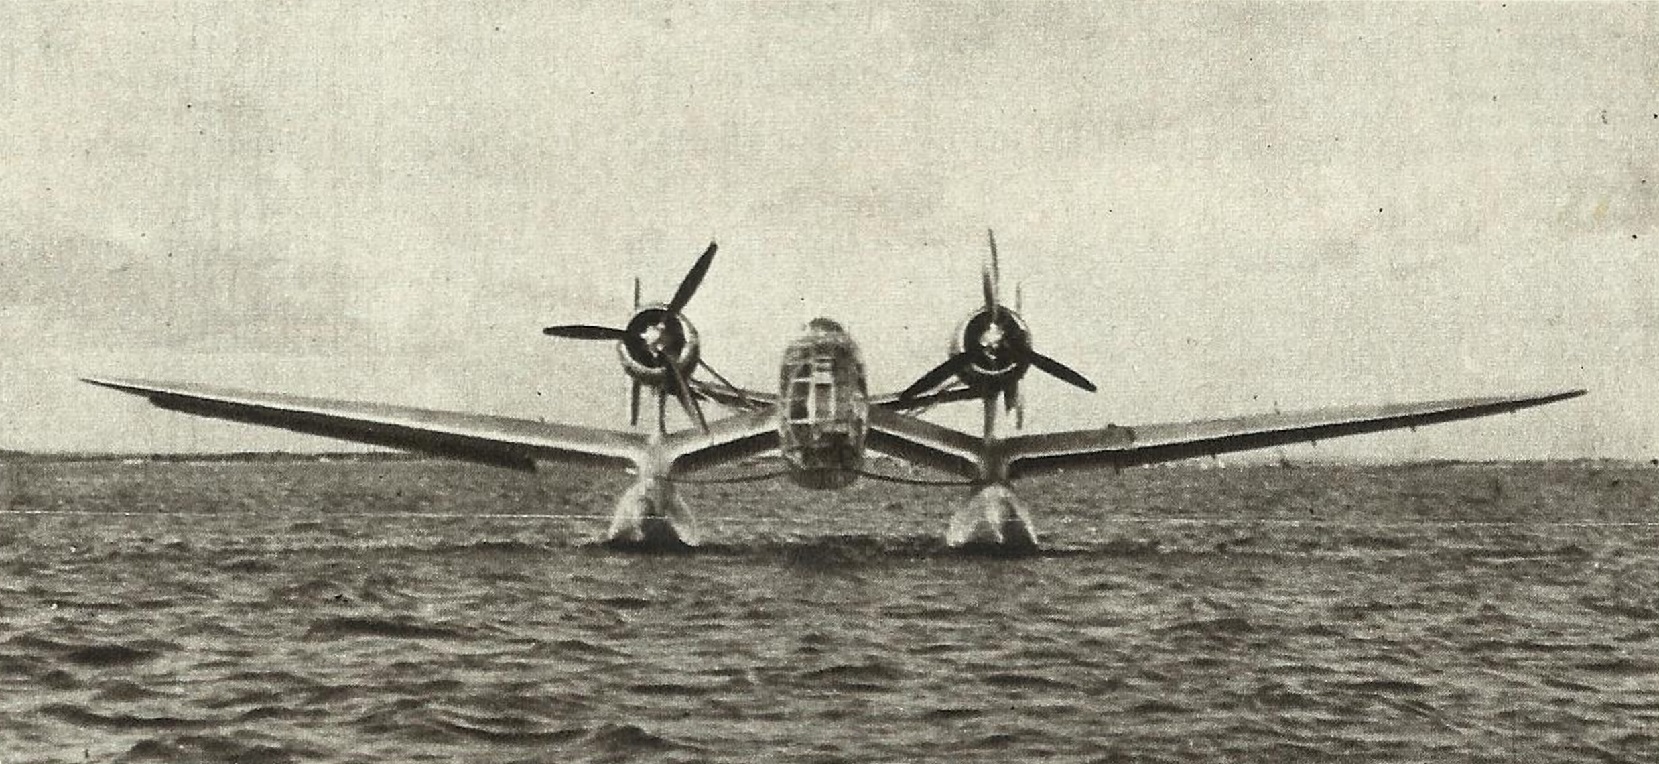 «Боевой и разведывательный гидросамолет». Опытный многоцелевой поплавковый гидросамолет Loire-Nieuport LN-10. Франция Часть 2